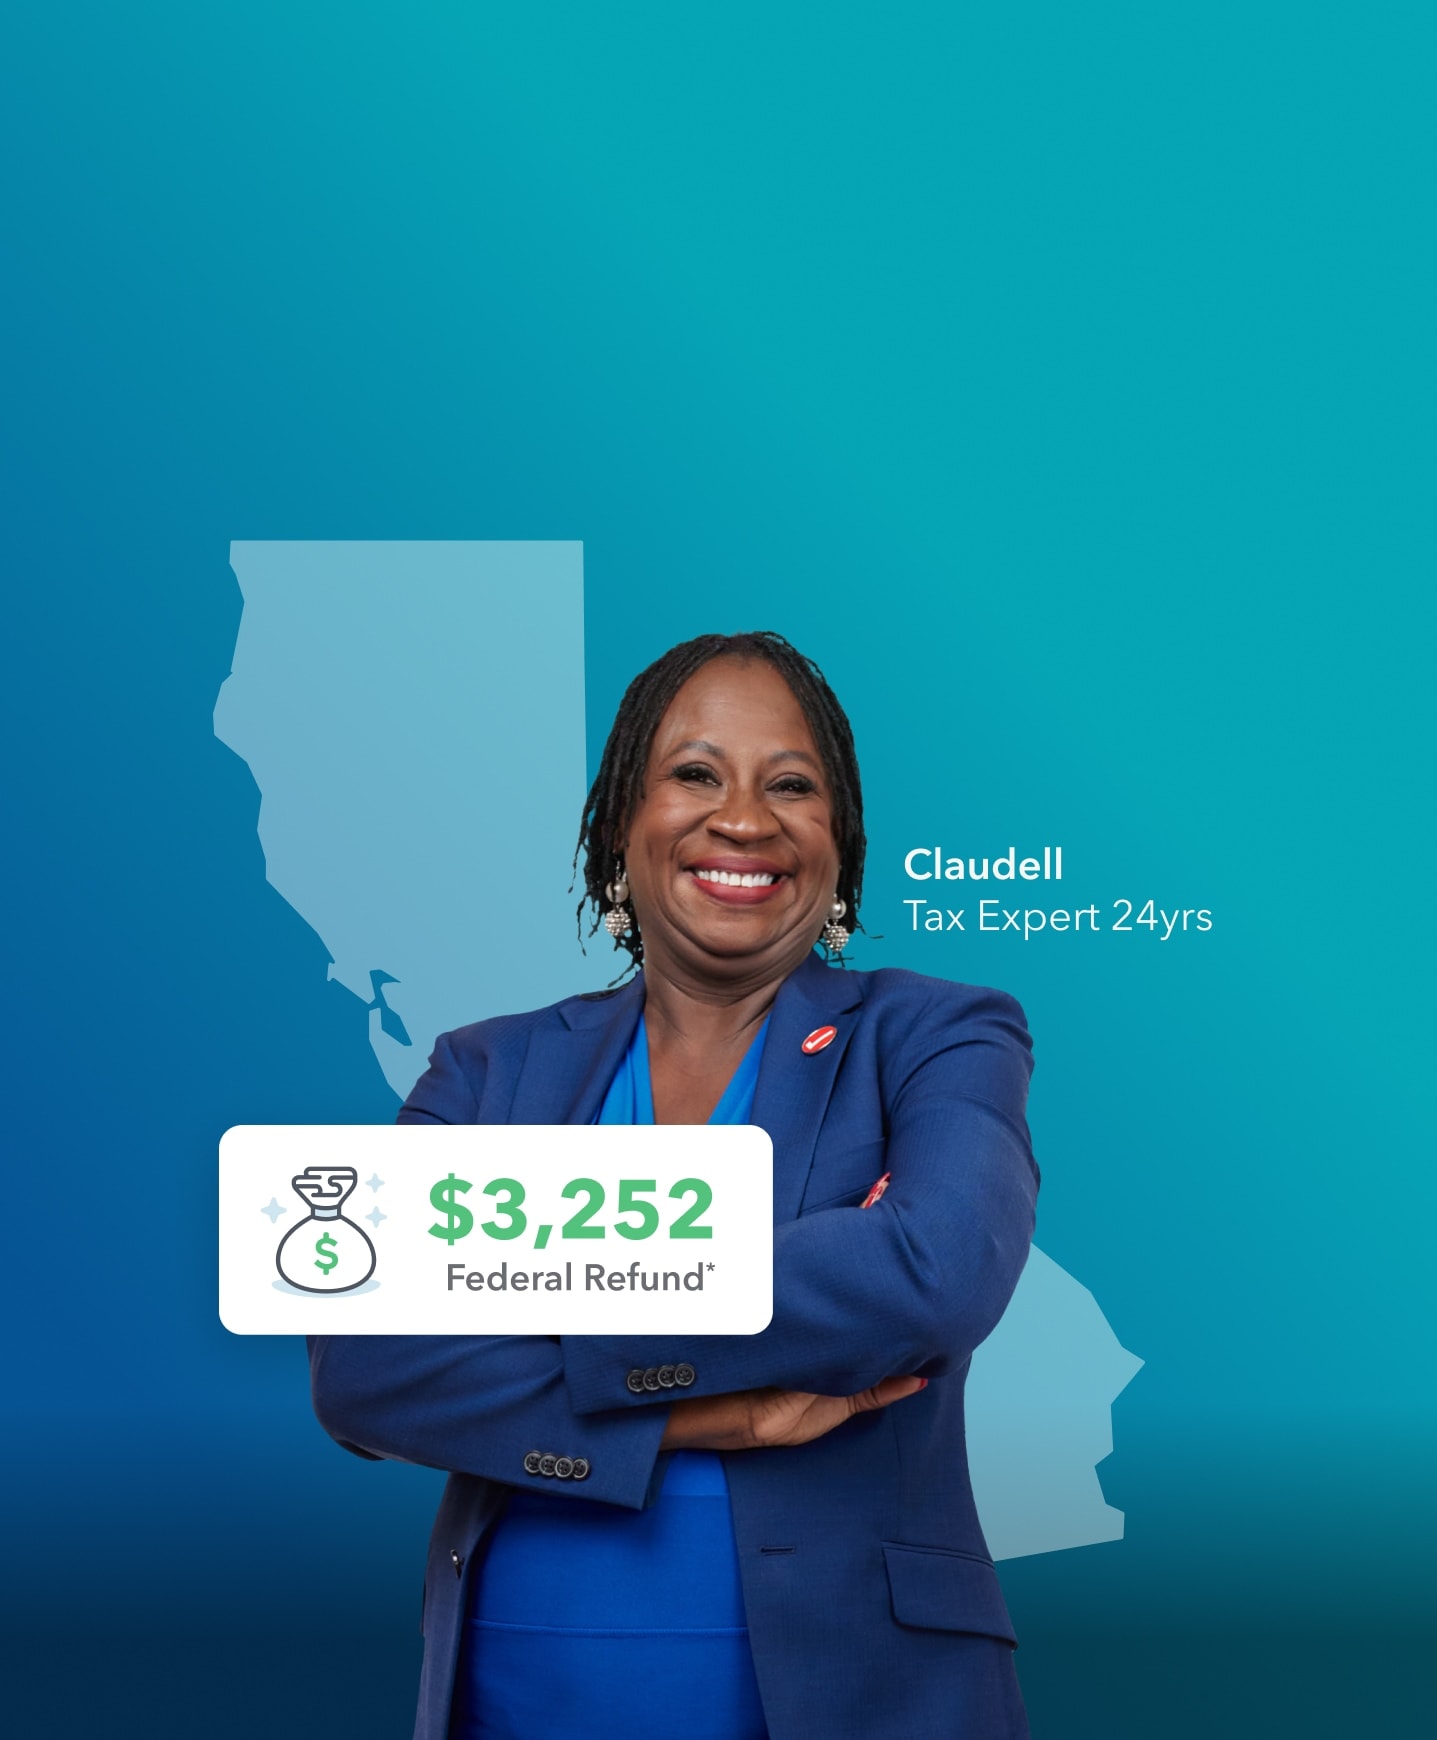 税务专家Claudell旁边微笑和她的双手交叉的平均退款金额3252美元,加州是在她的身后。